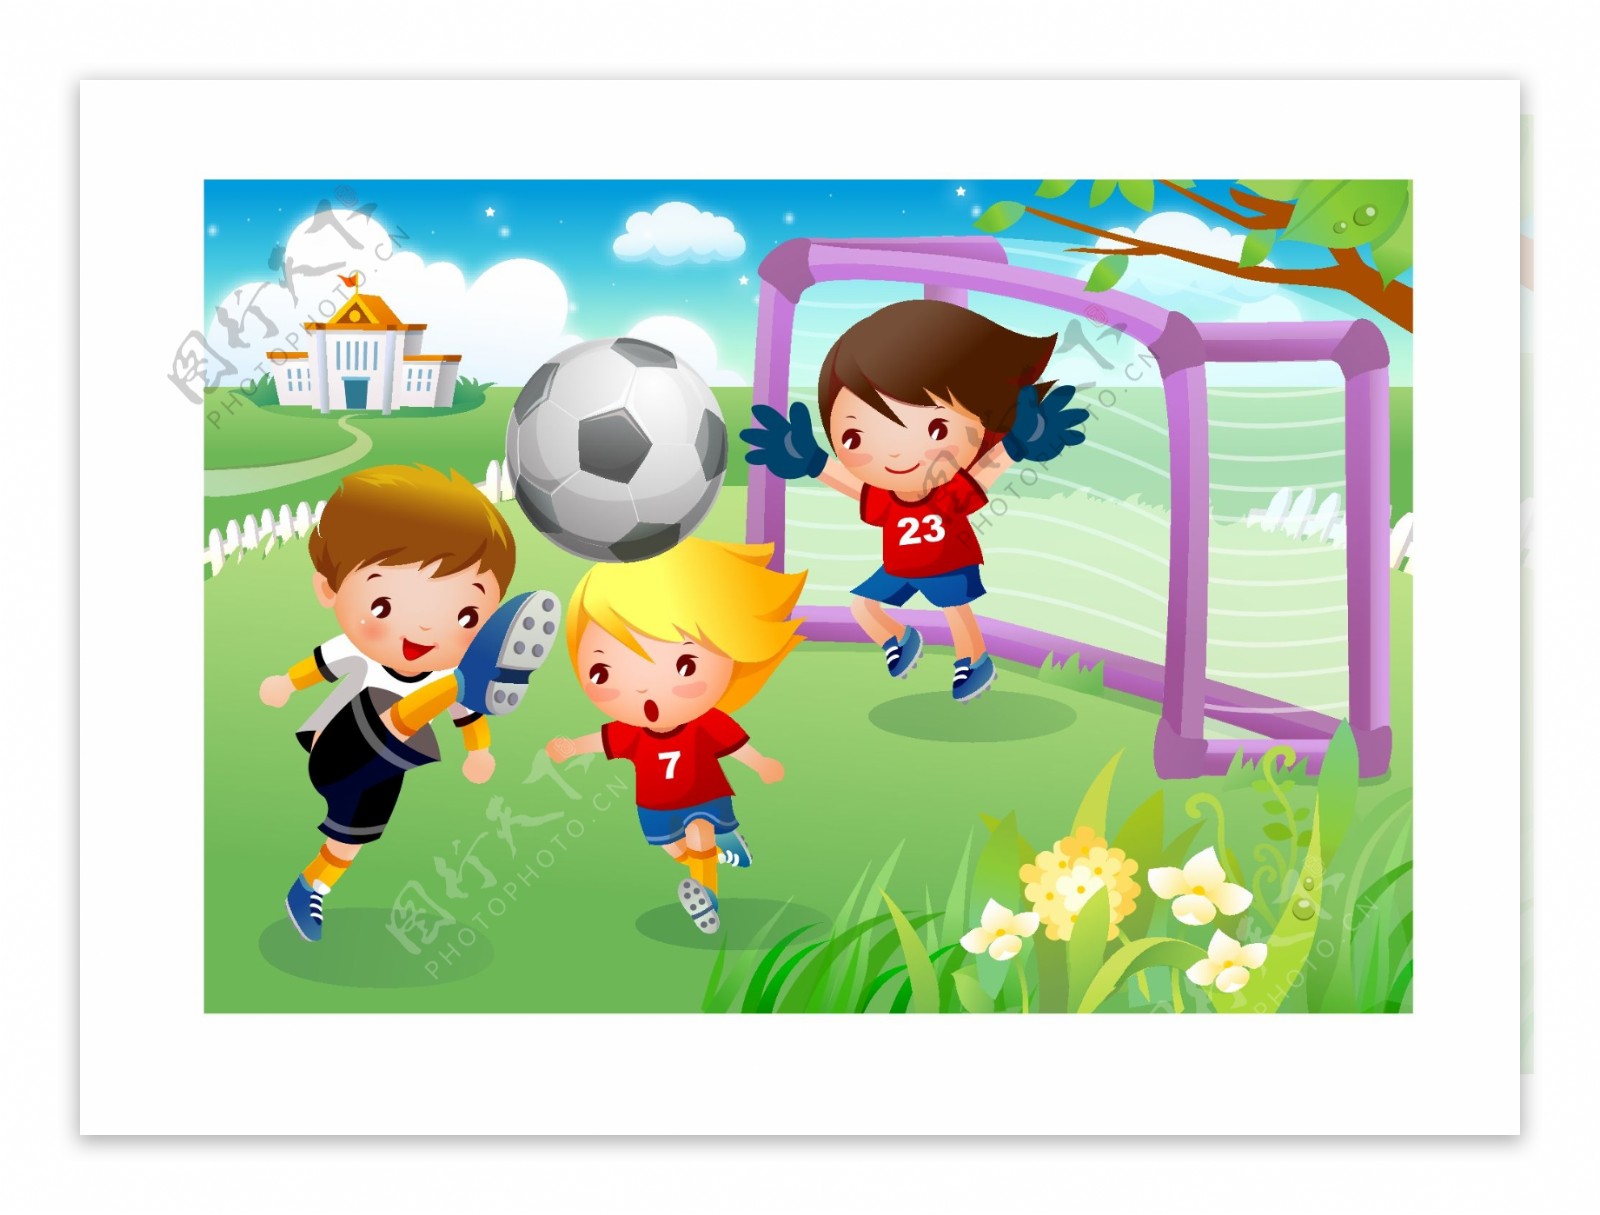 儿童足球运动素材